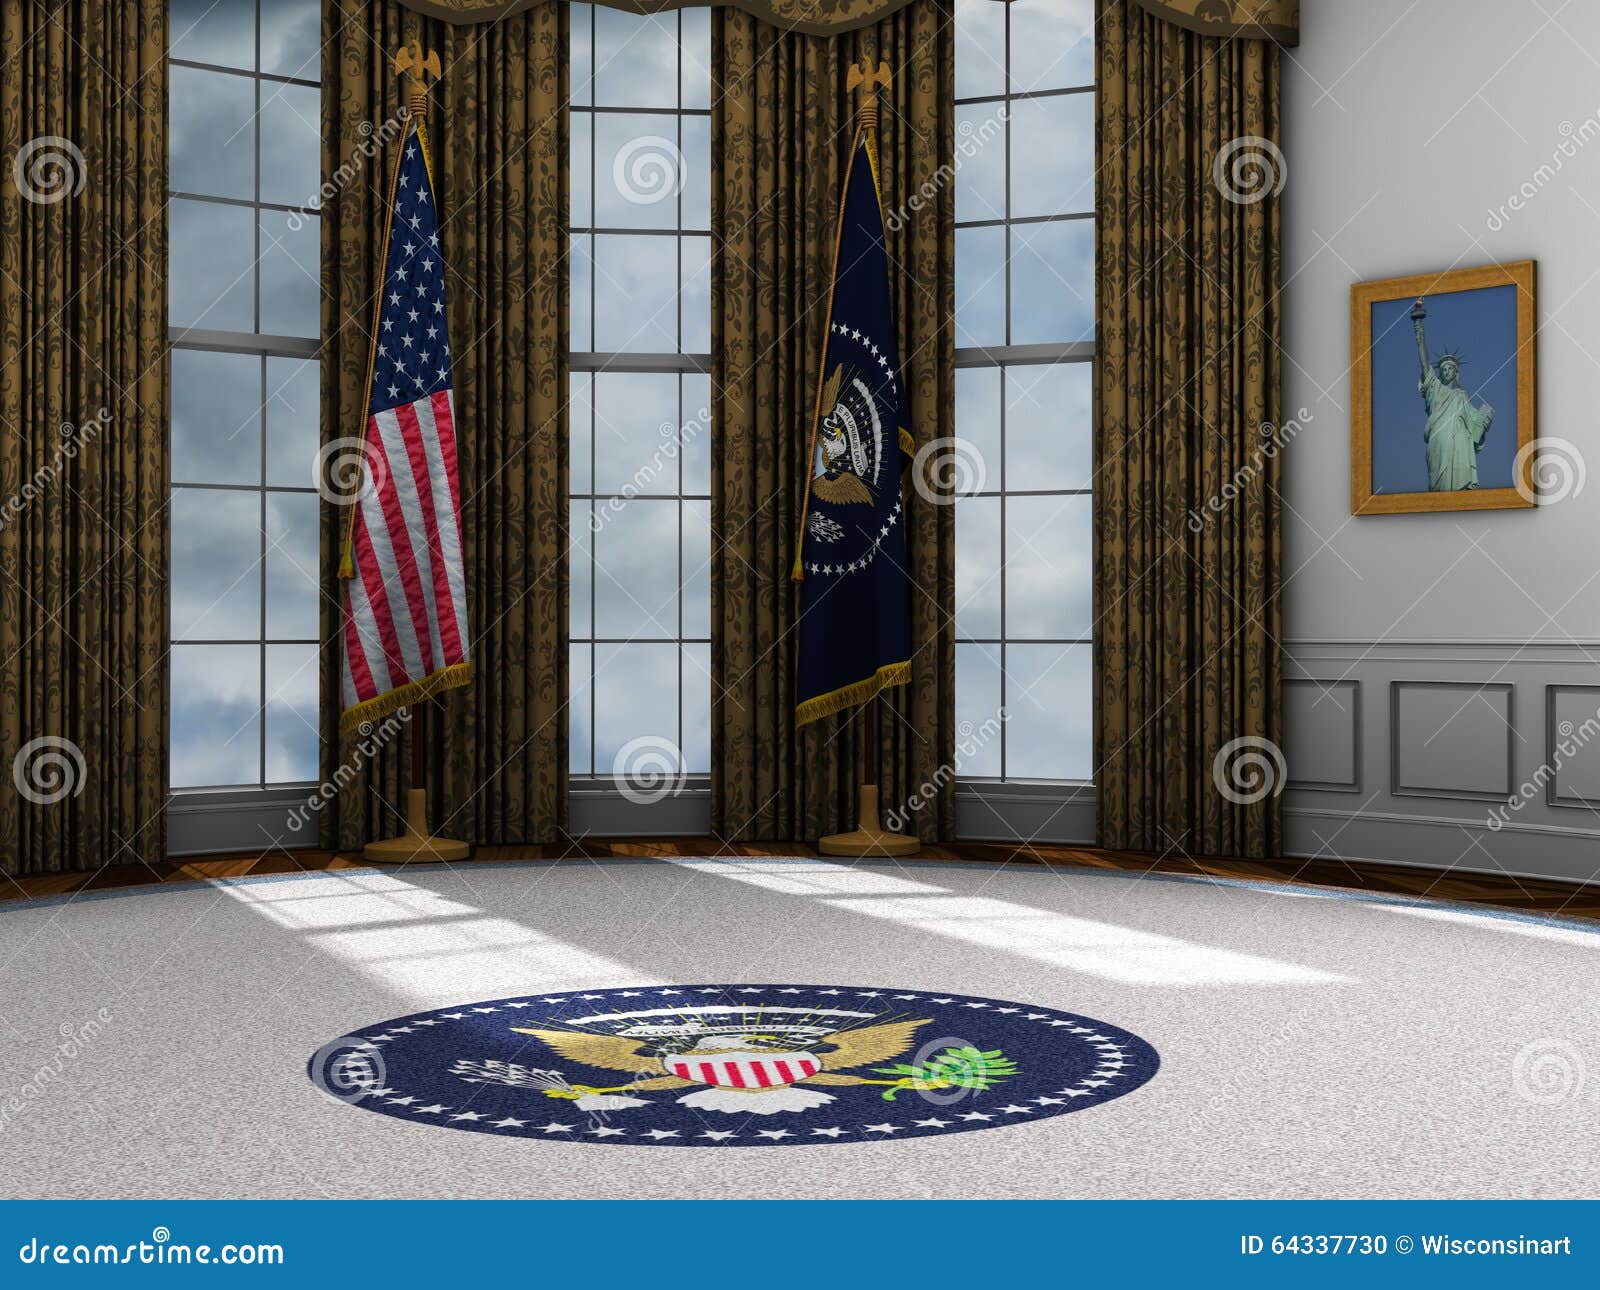 president, presidential oval office, white house